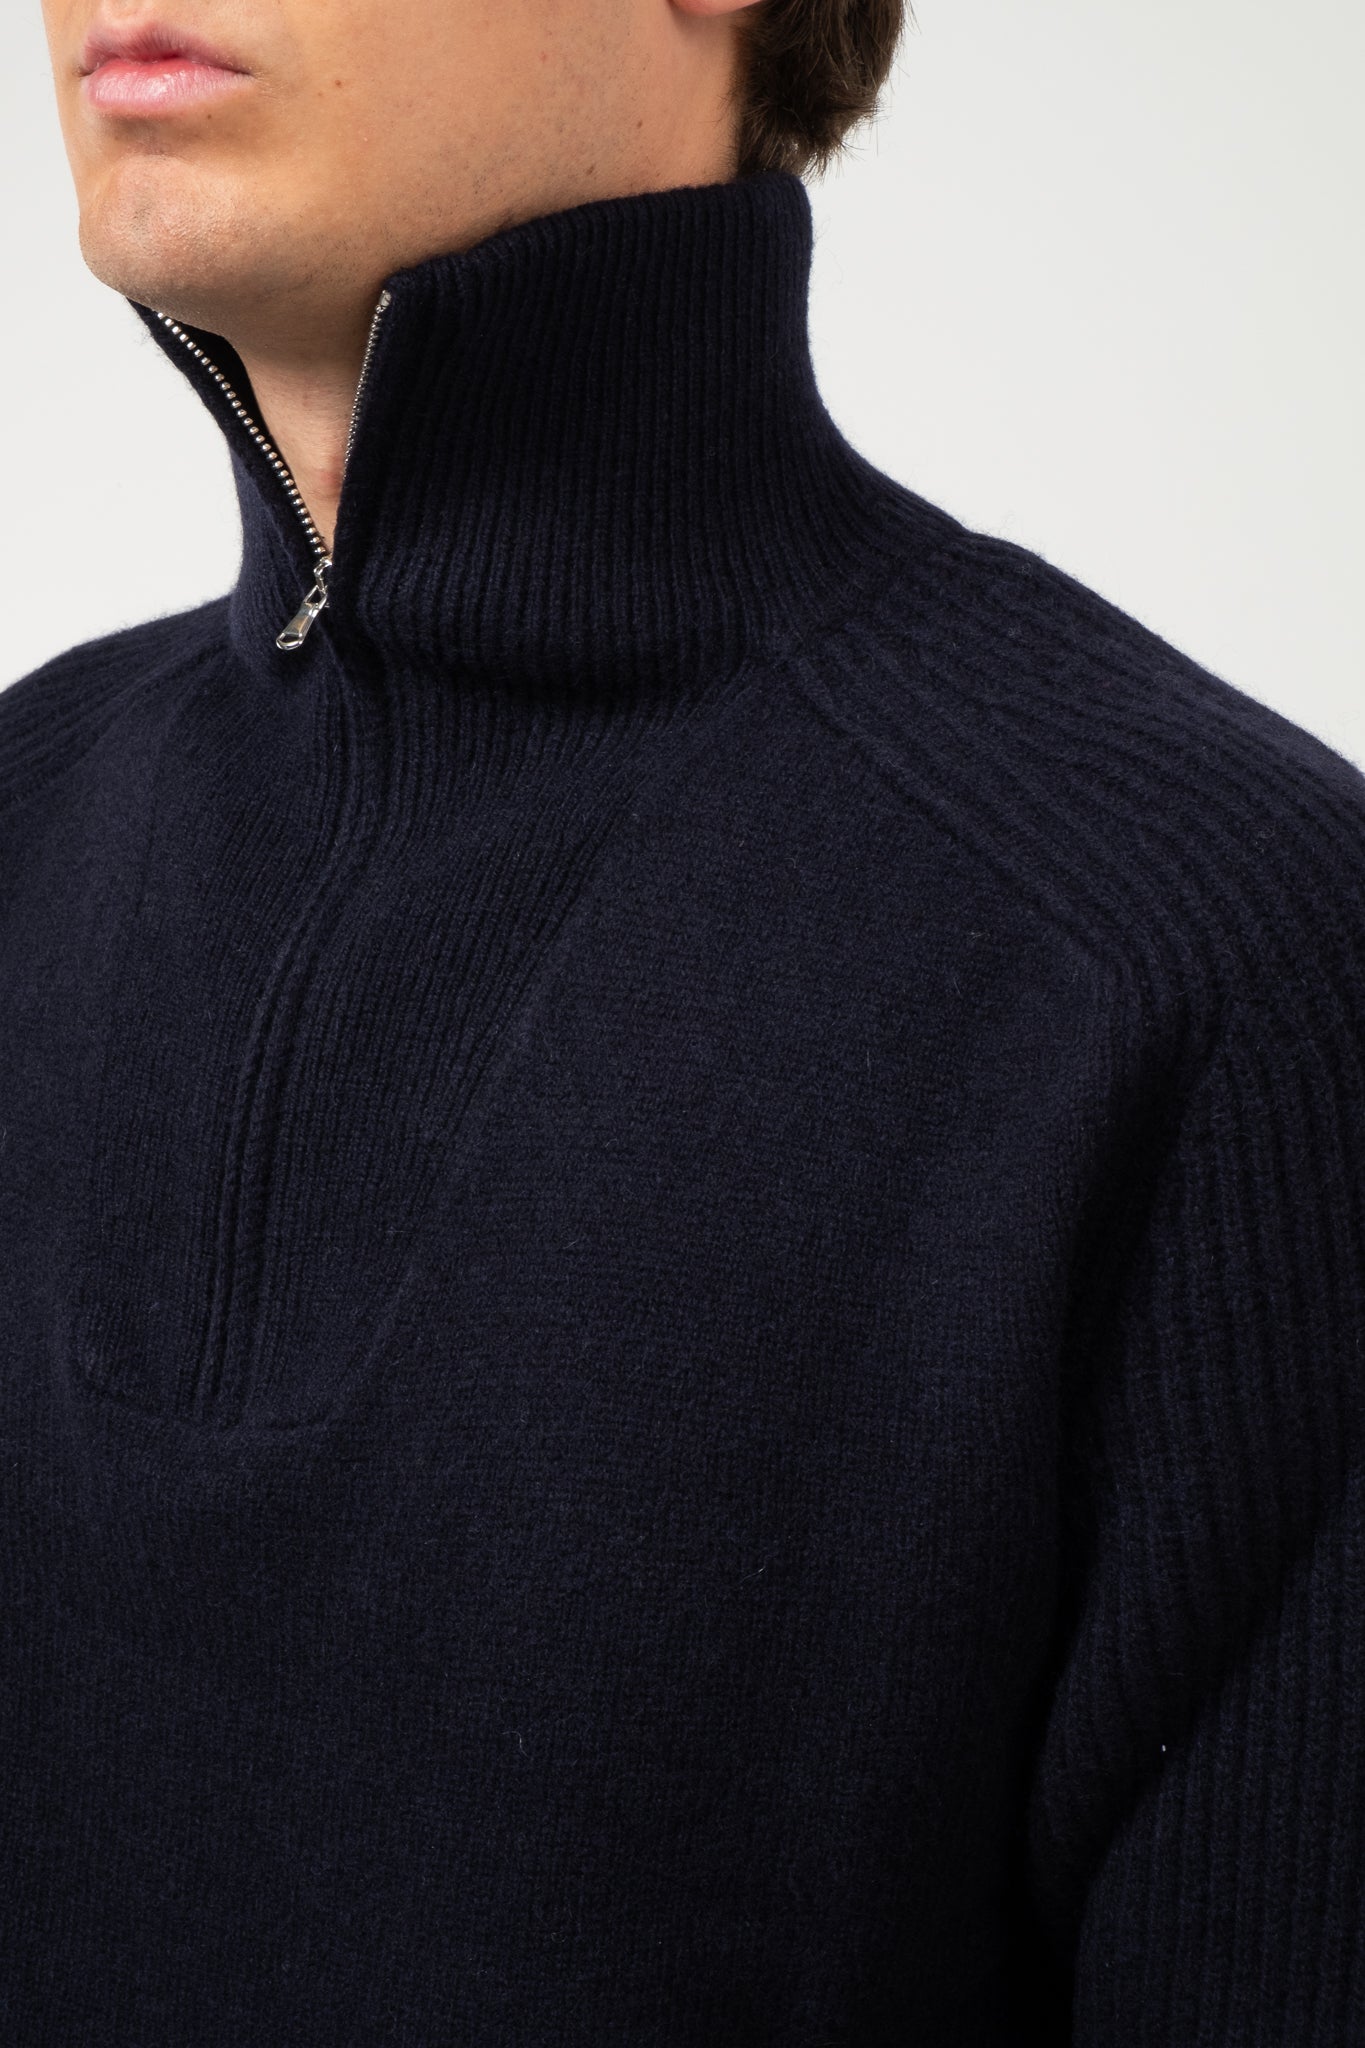 1/4 Zip Sweater - Navy